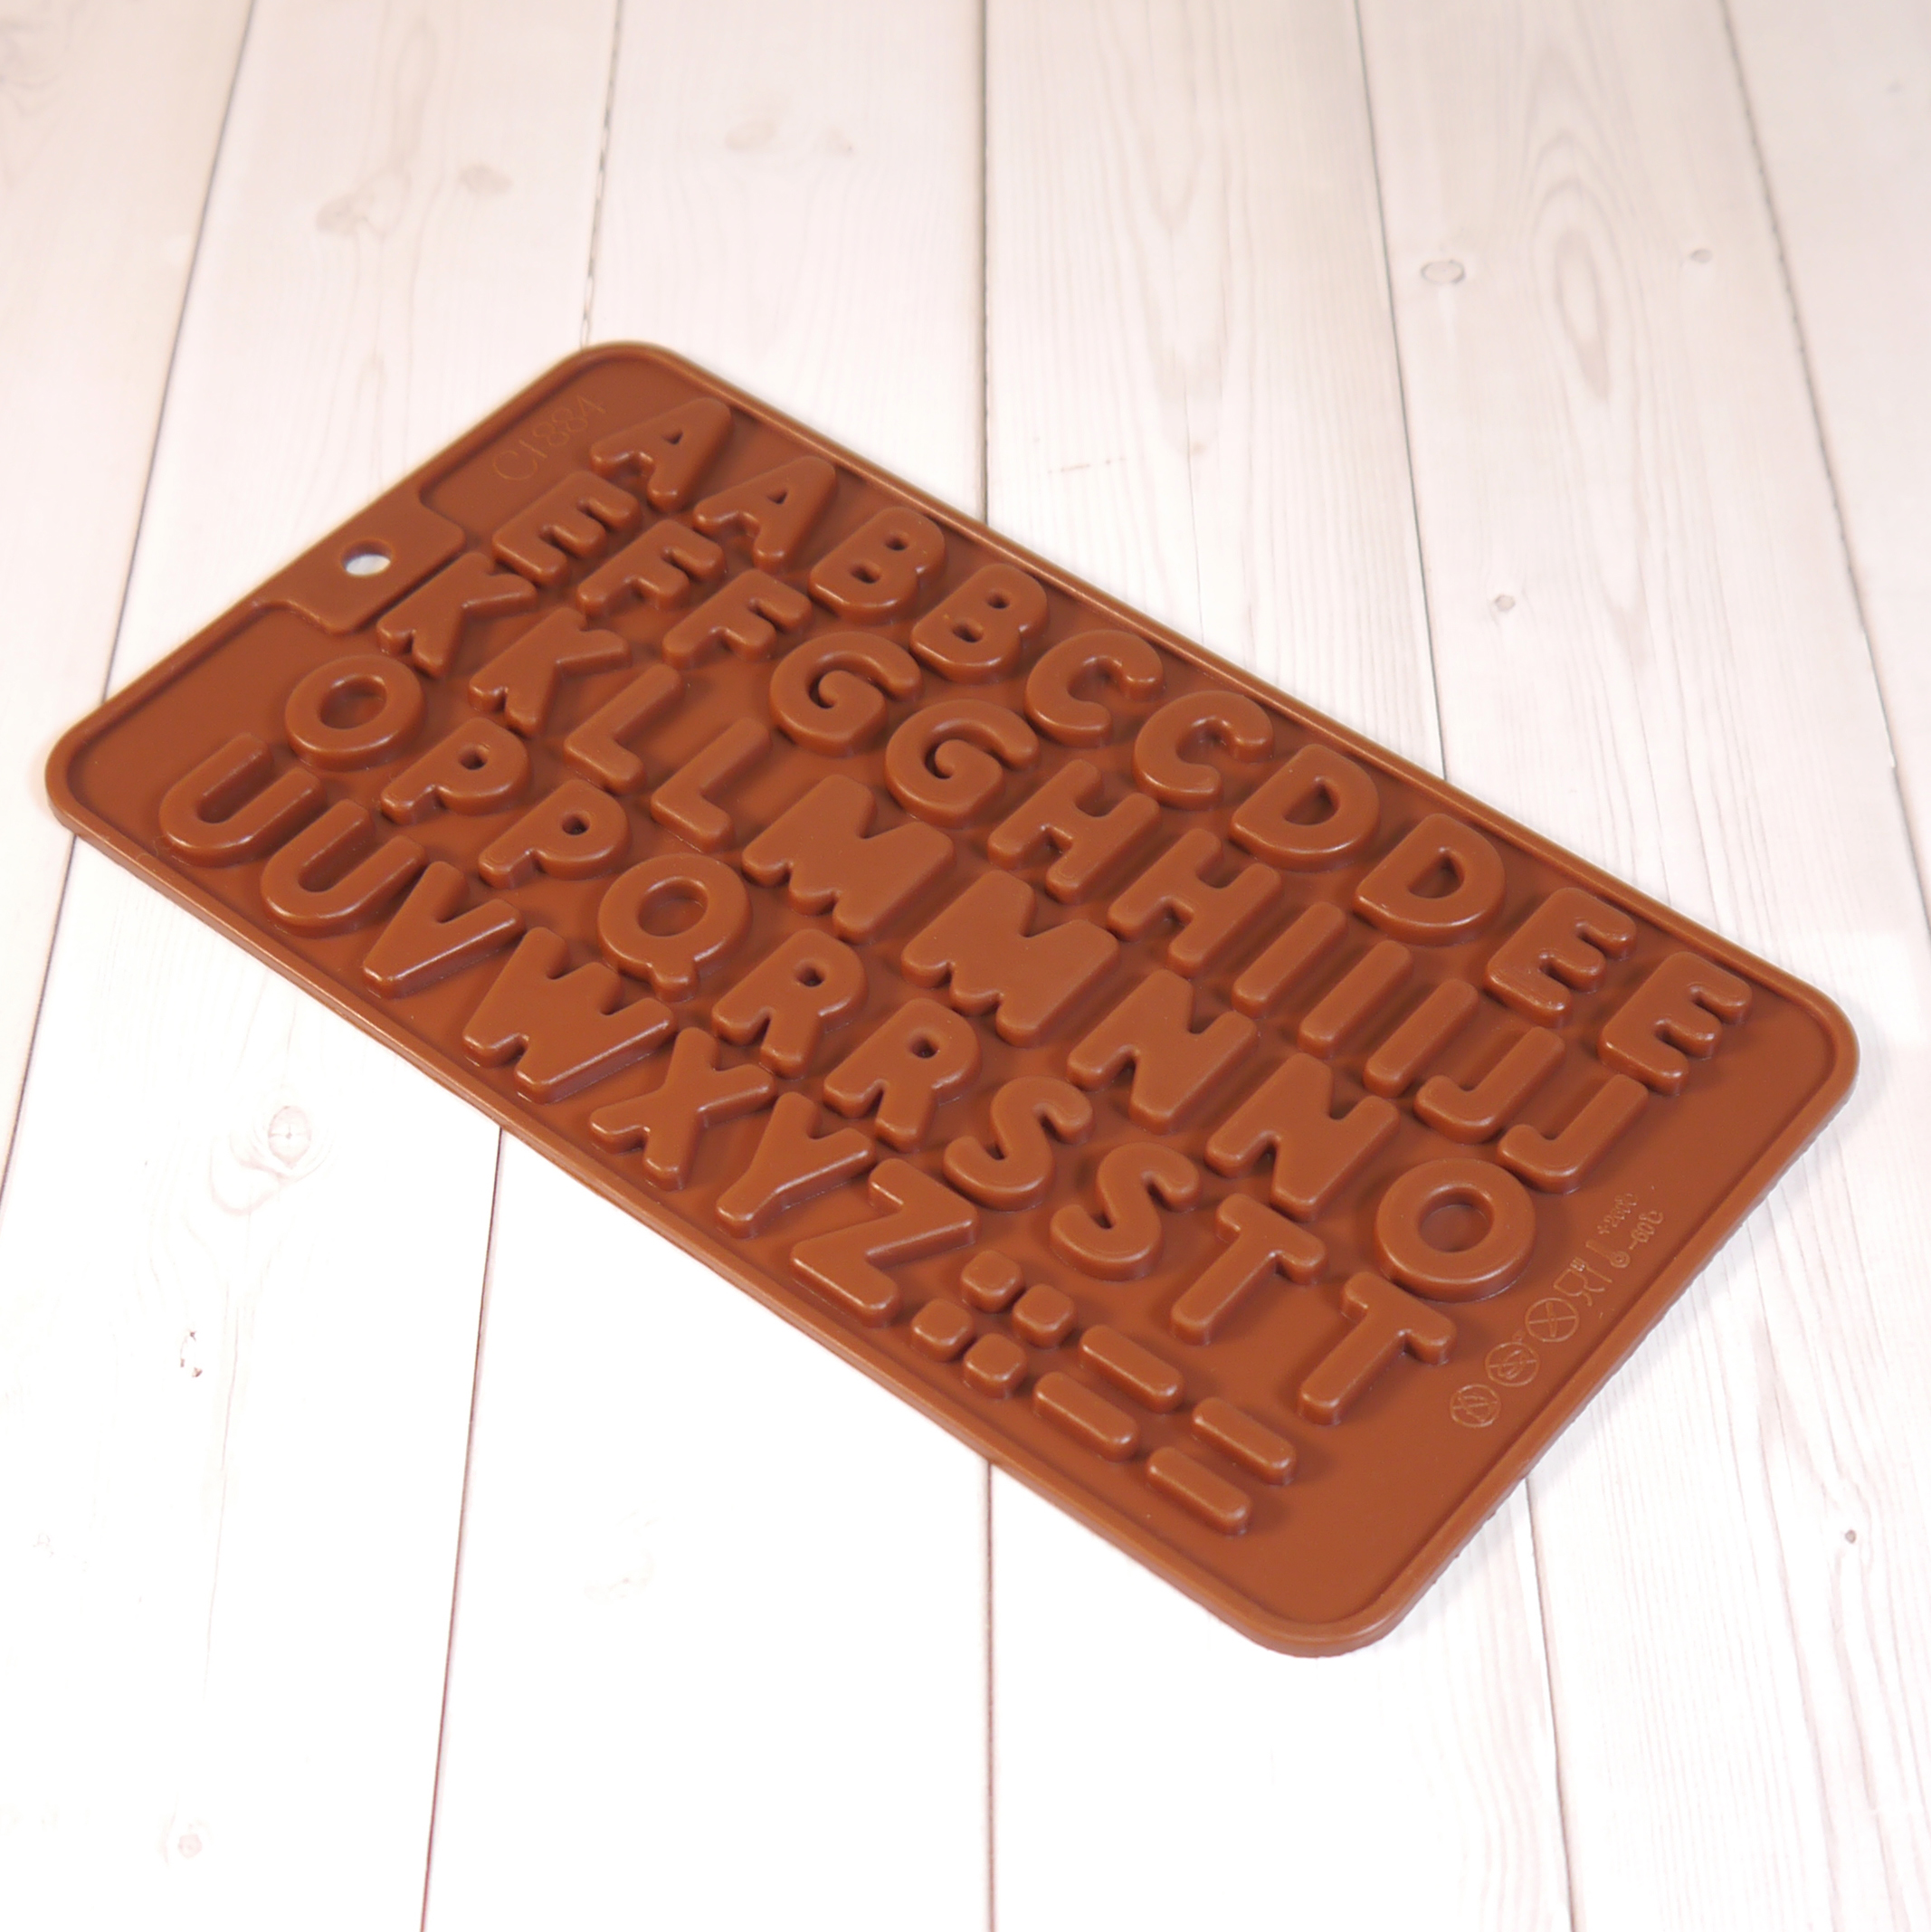 Формы для заливки шоколада. Силиконовая форма английский алфавит. KEYPRODS форма силиконовая для шоколада английский алфавит. Молд буквы для шоколада.